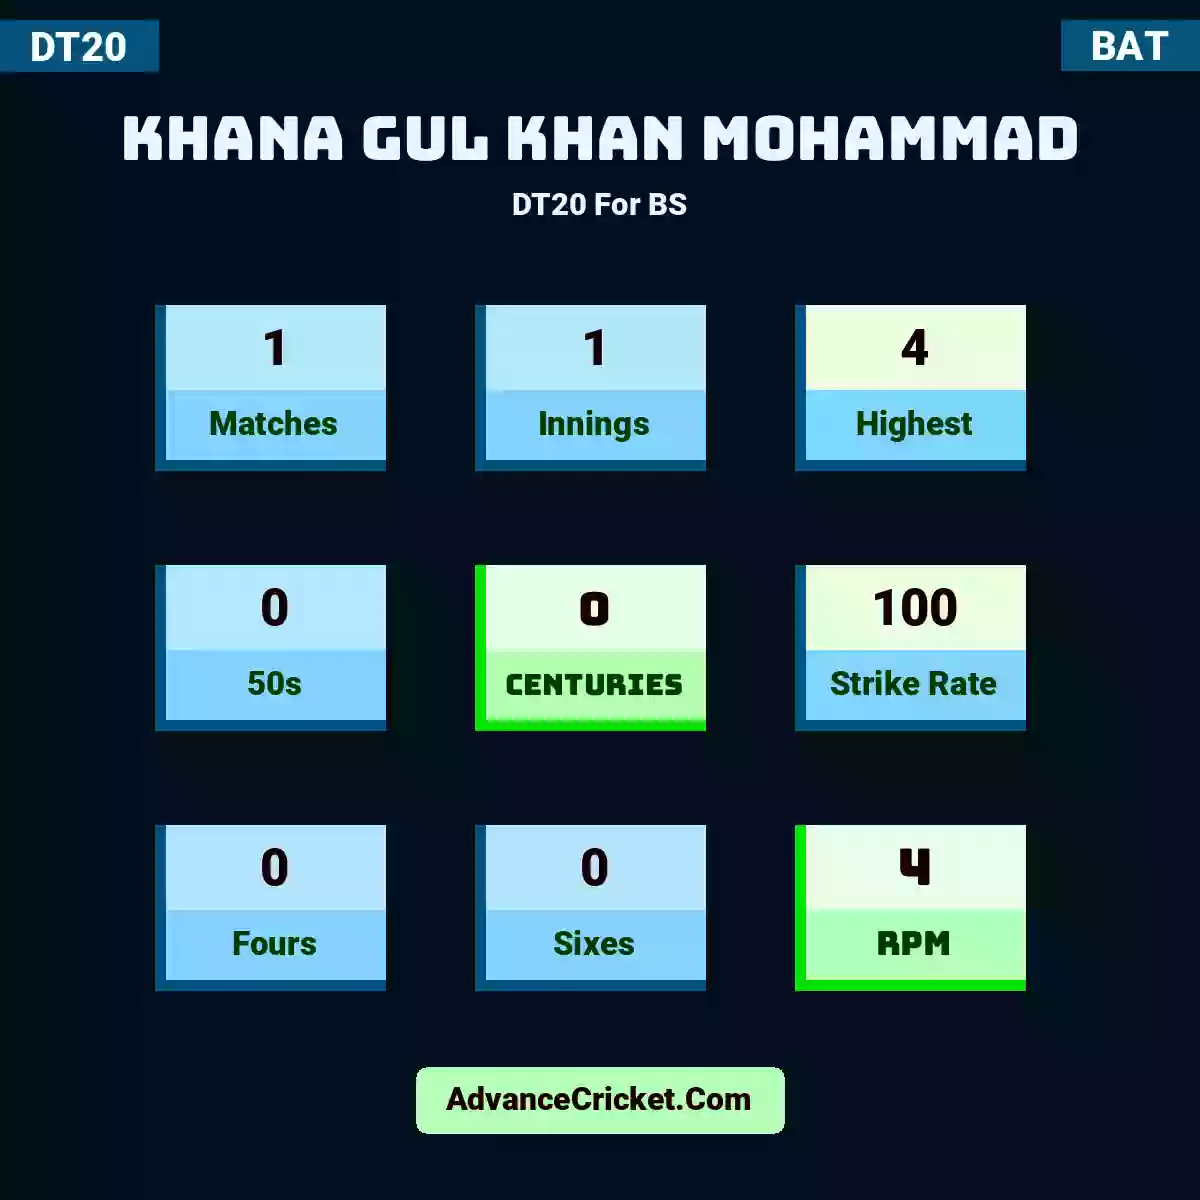 Khana Gul Khan Mohammad DT20  For BS, Khana Gul Khan Mohammad played 1 matches, scored 4 runs as highest, 0 half-centuries, and 0 centuries, with a strike rate of 100. K.Gul.Khan.Mohammad hit 0 fours and 0 sixes, with an RPM of 4.